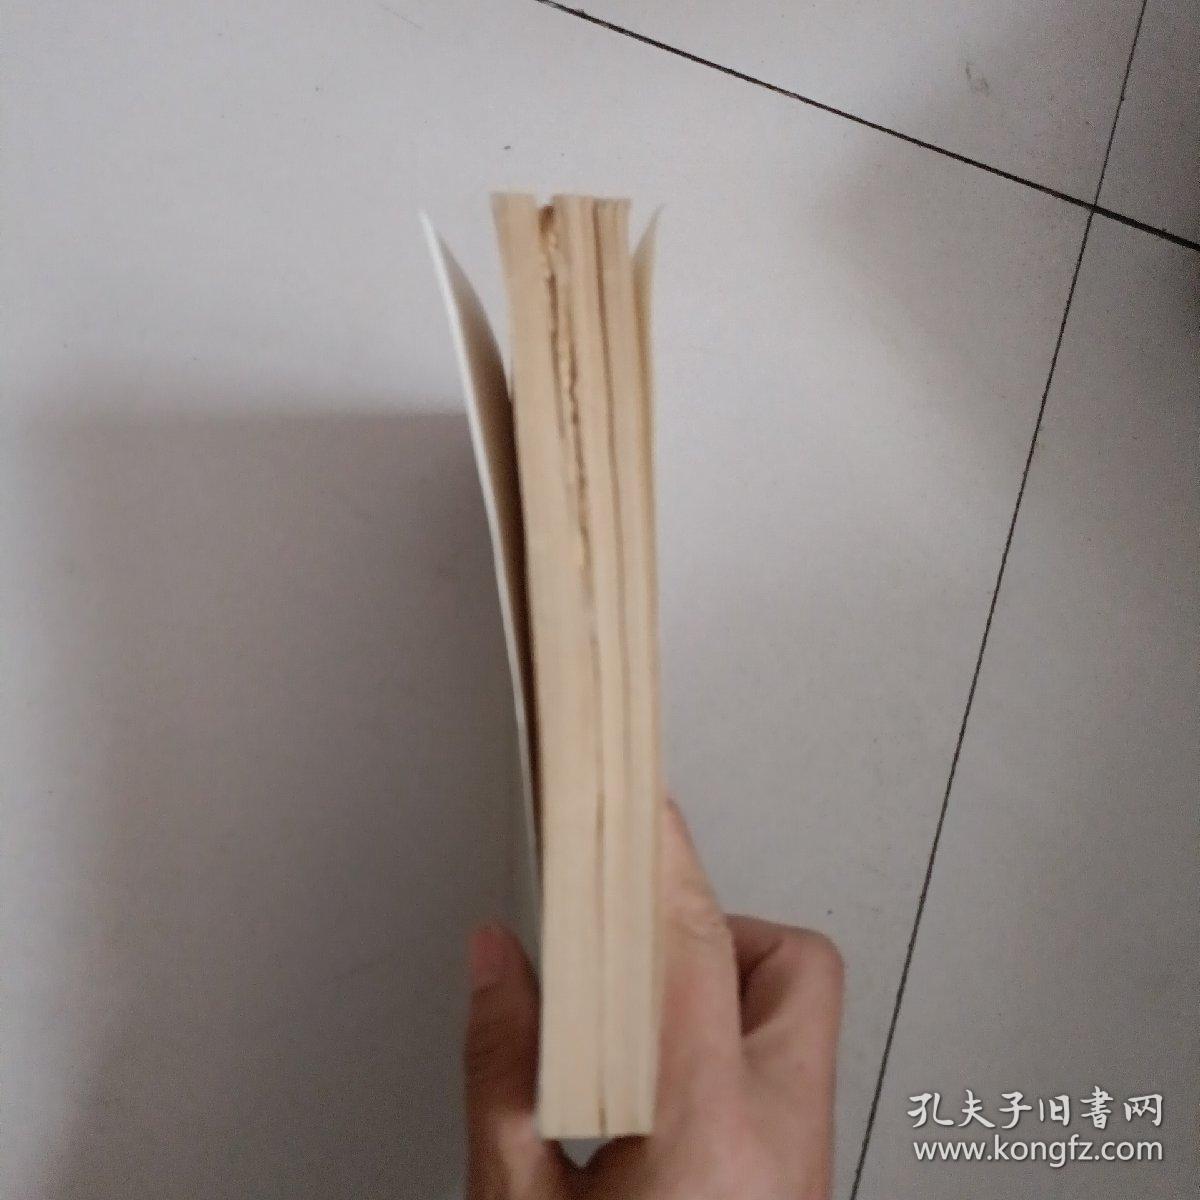 中国逻辑与语言函授大学教材 现代汉语【342号】